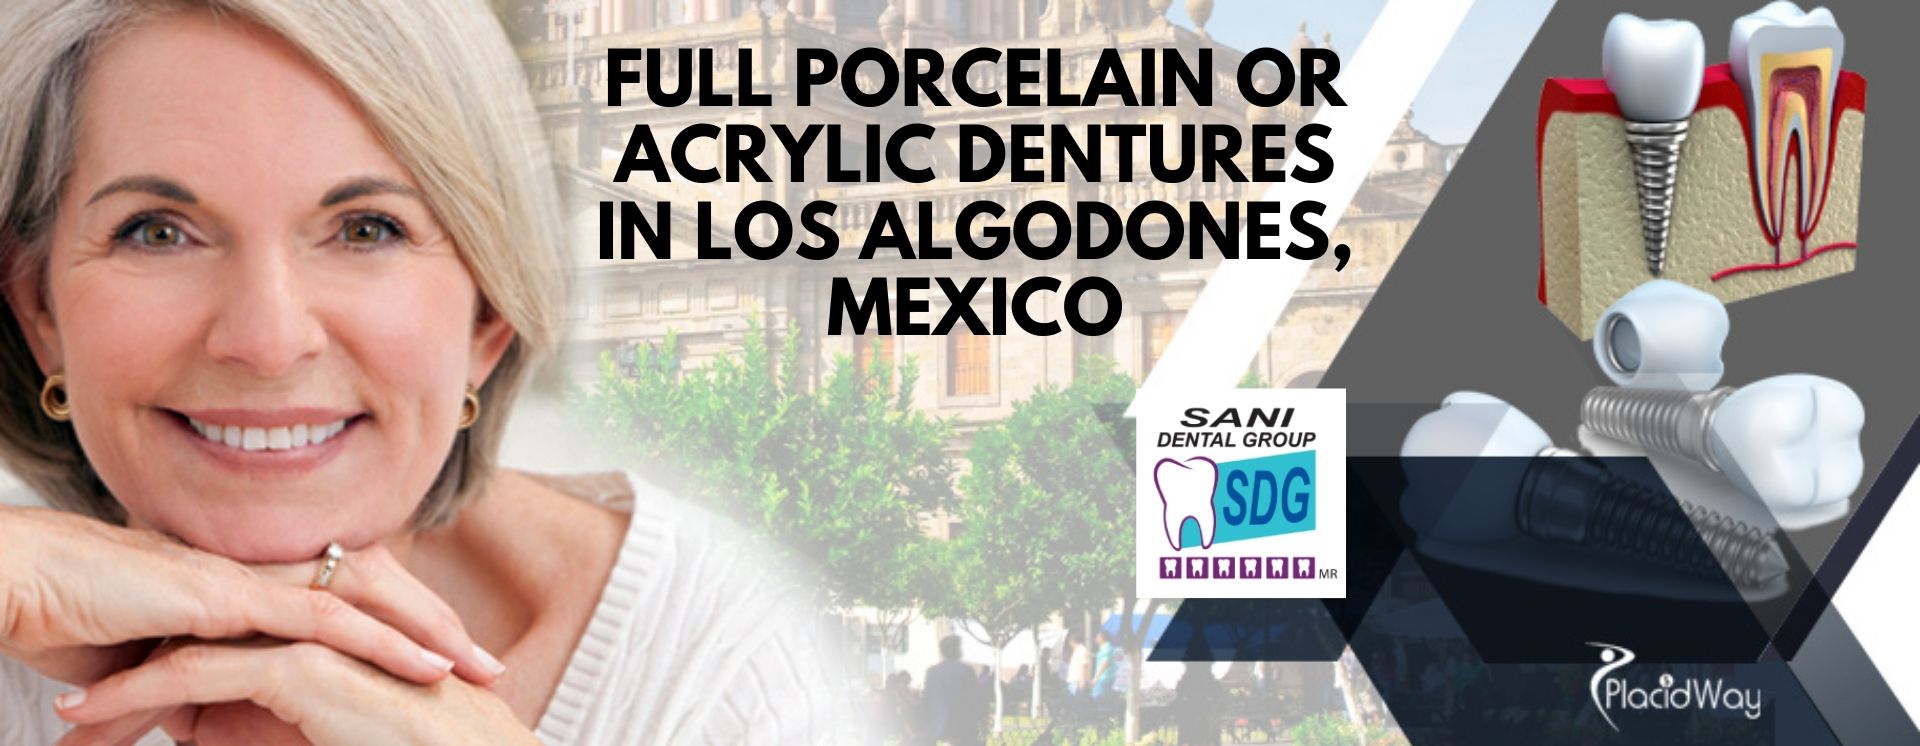 Dentures in Los Algodones, Mexico